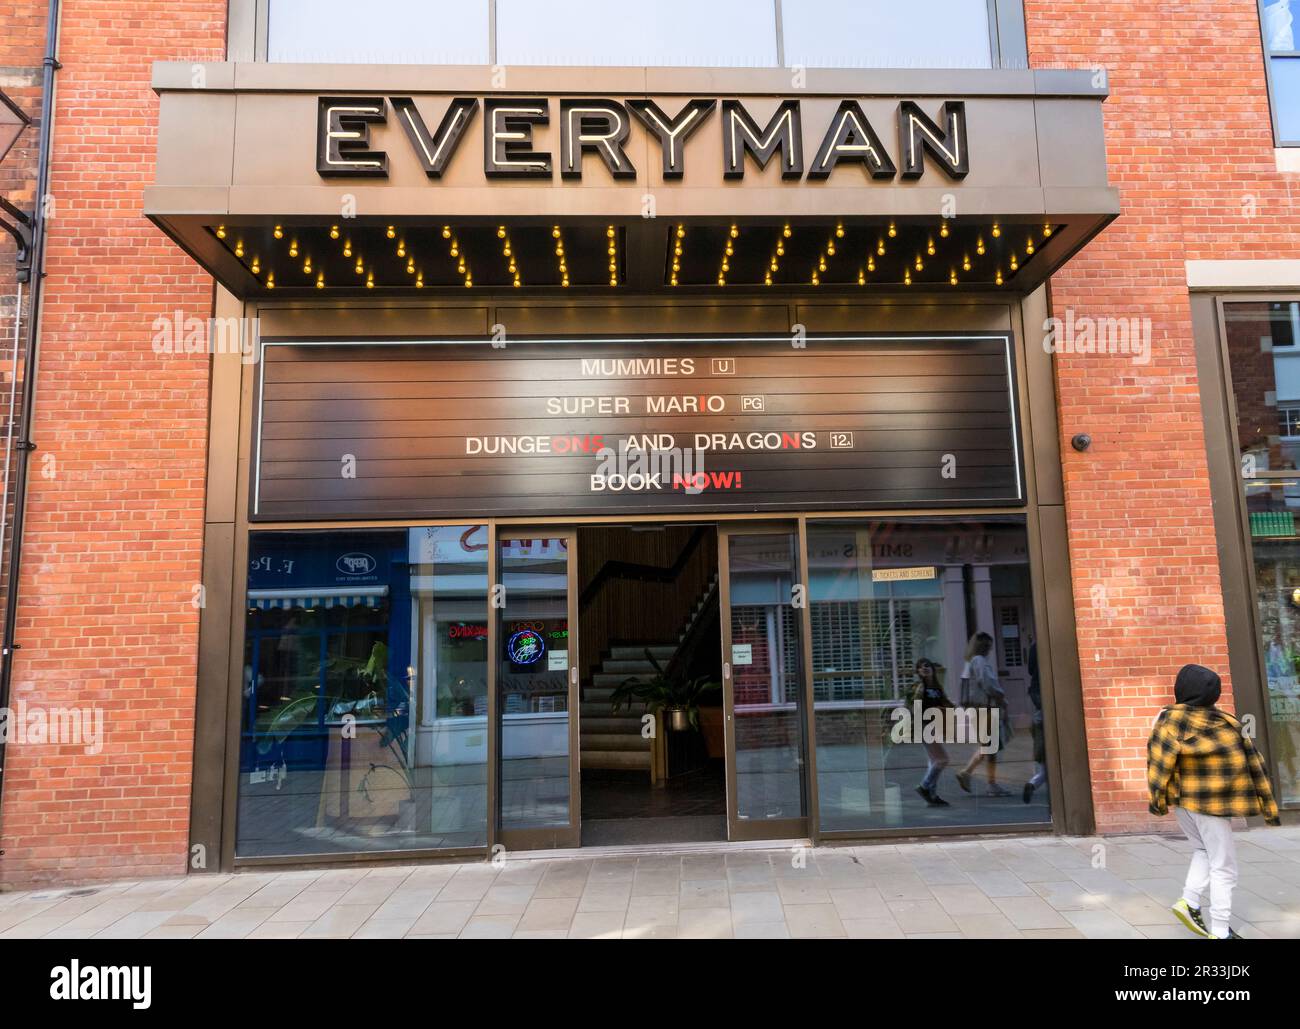 Everyman entrée cinéma films publicitaires à être présentés rue Sincil Lincoln City, Lincolnshire, Angleterre, Royaume-Uni Banque D'Images